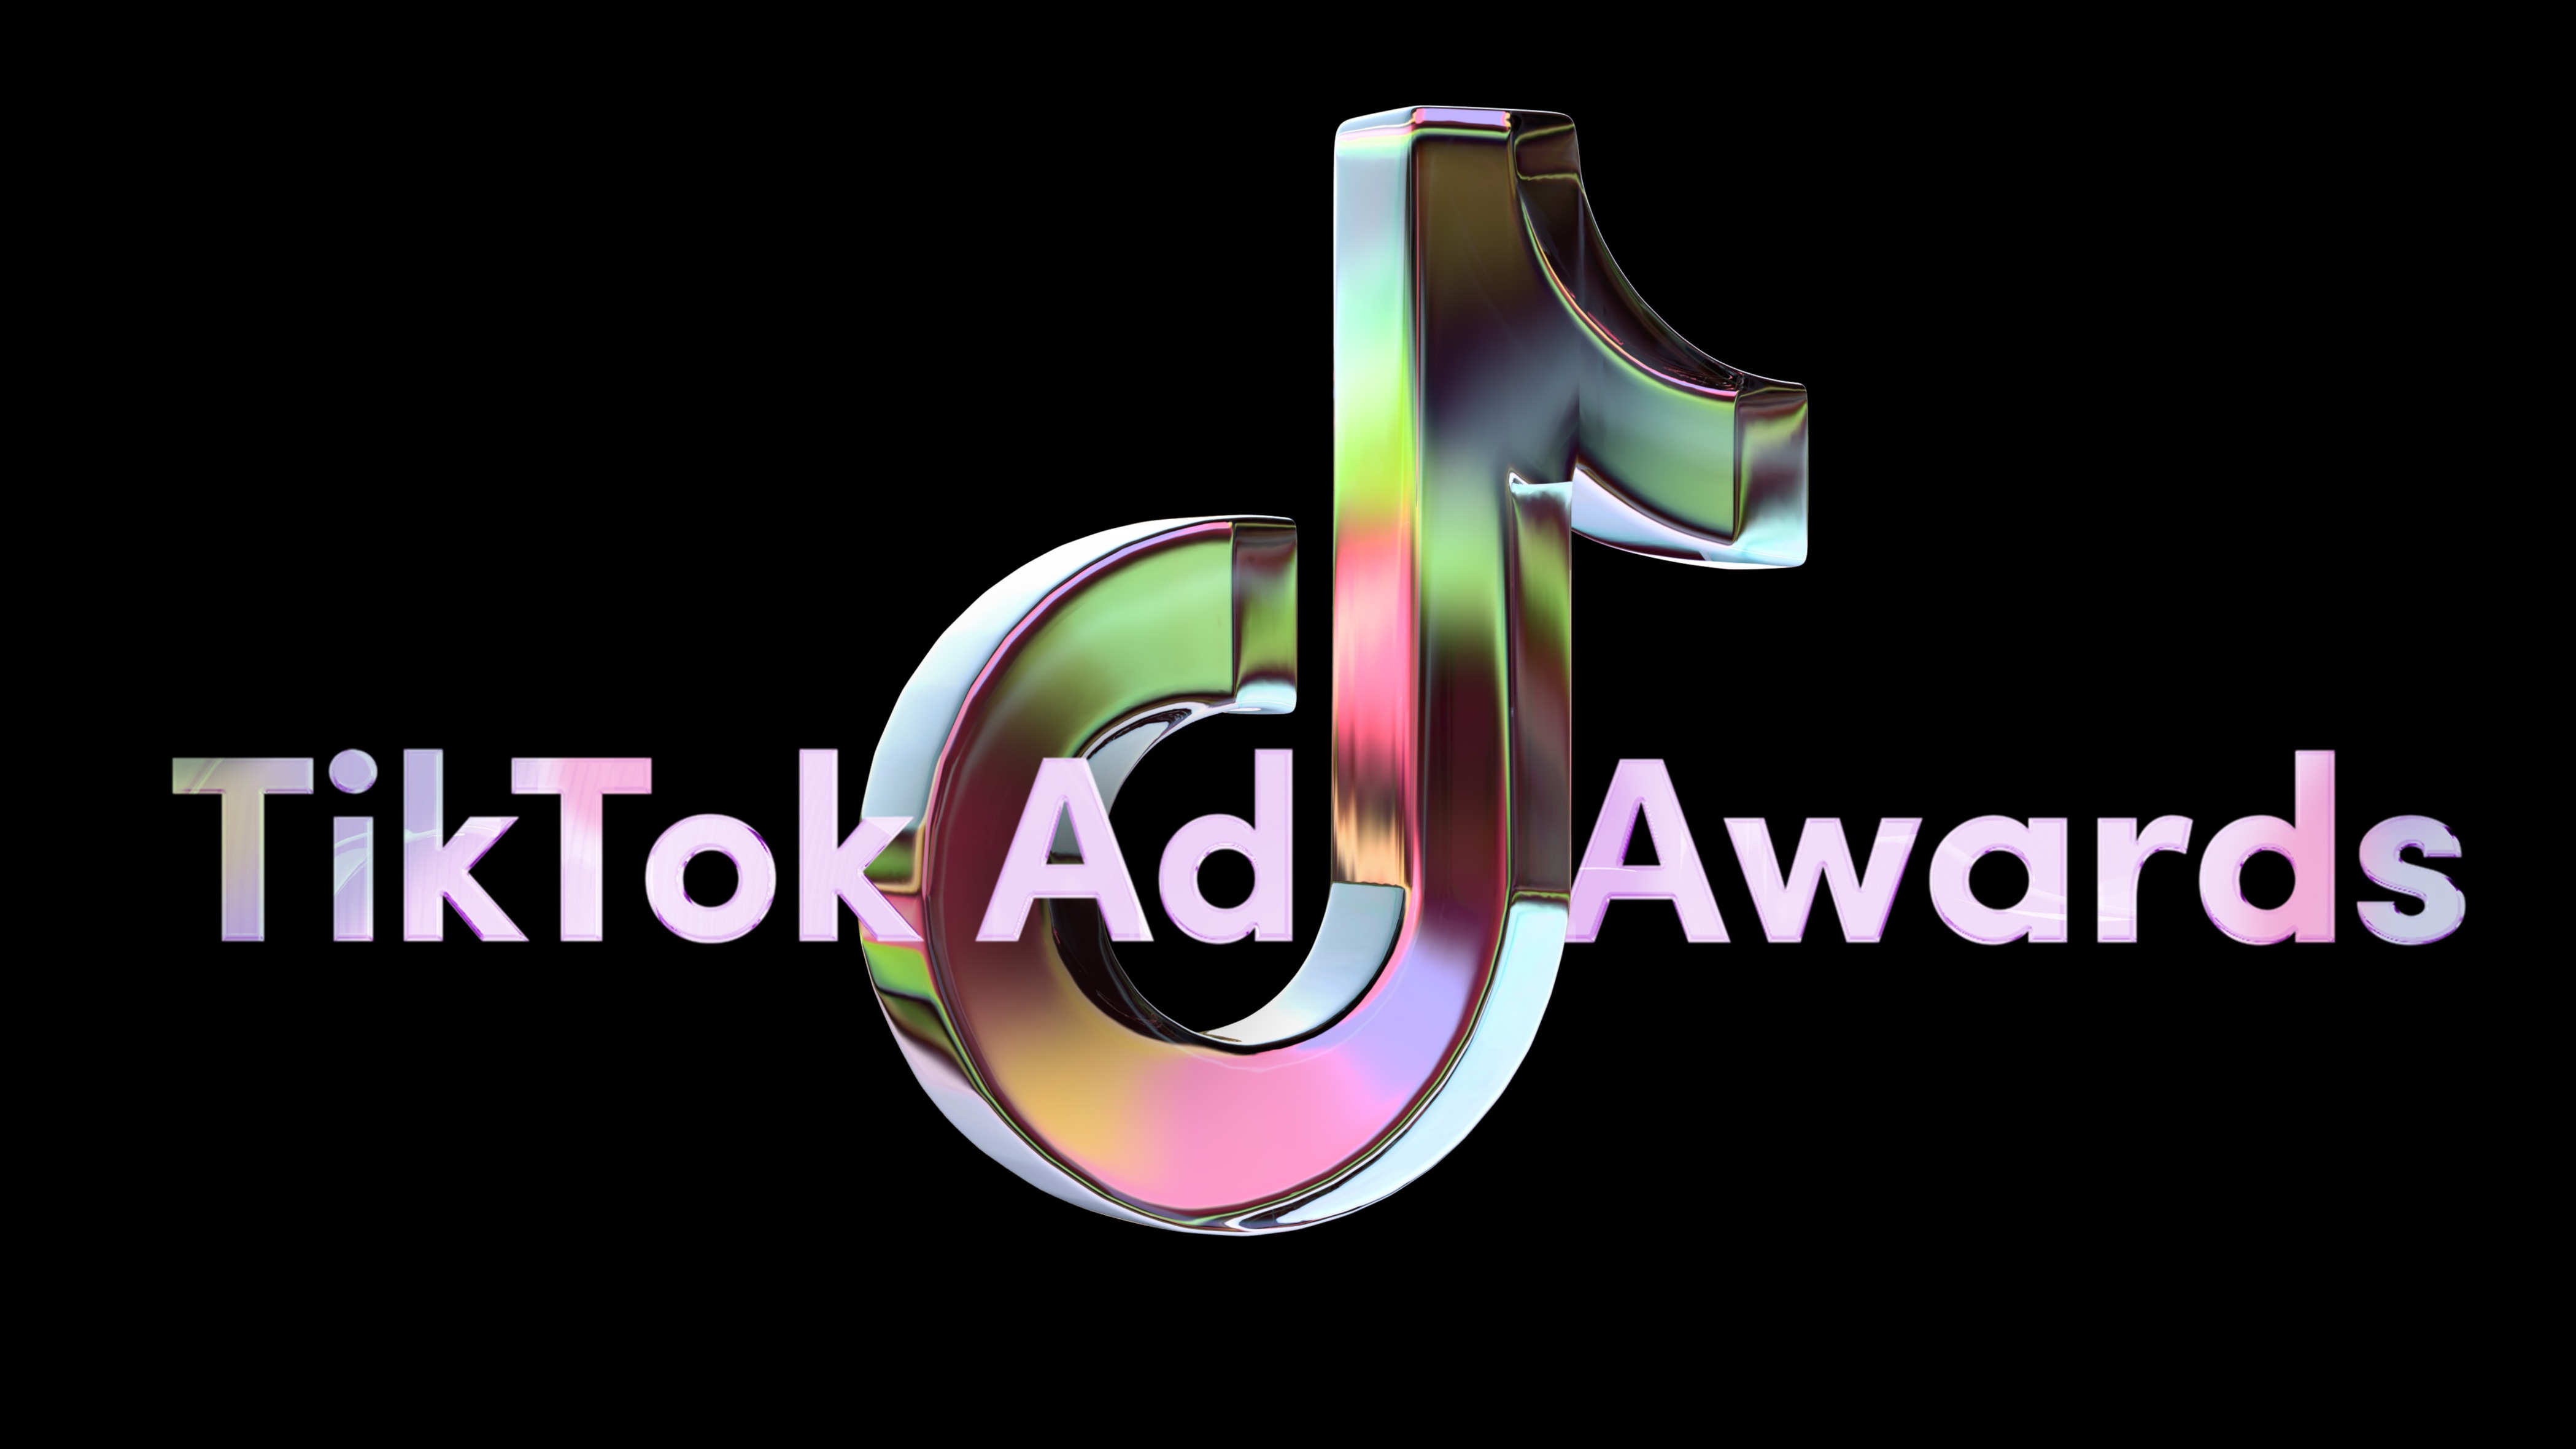 TikTok Ad Awards social